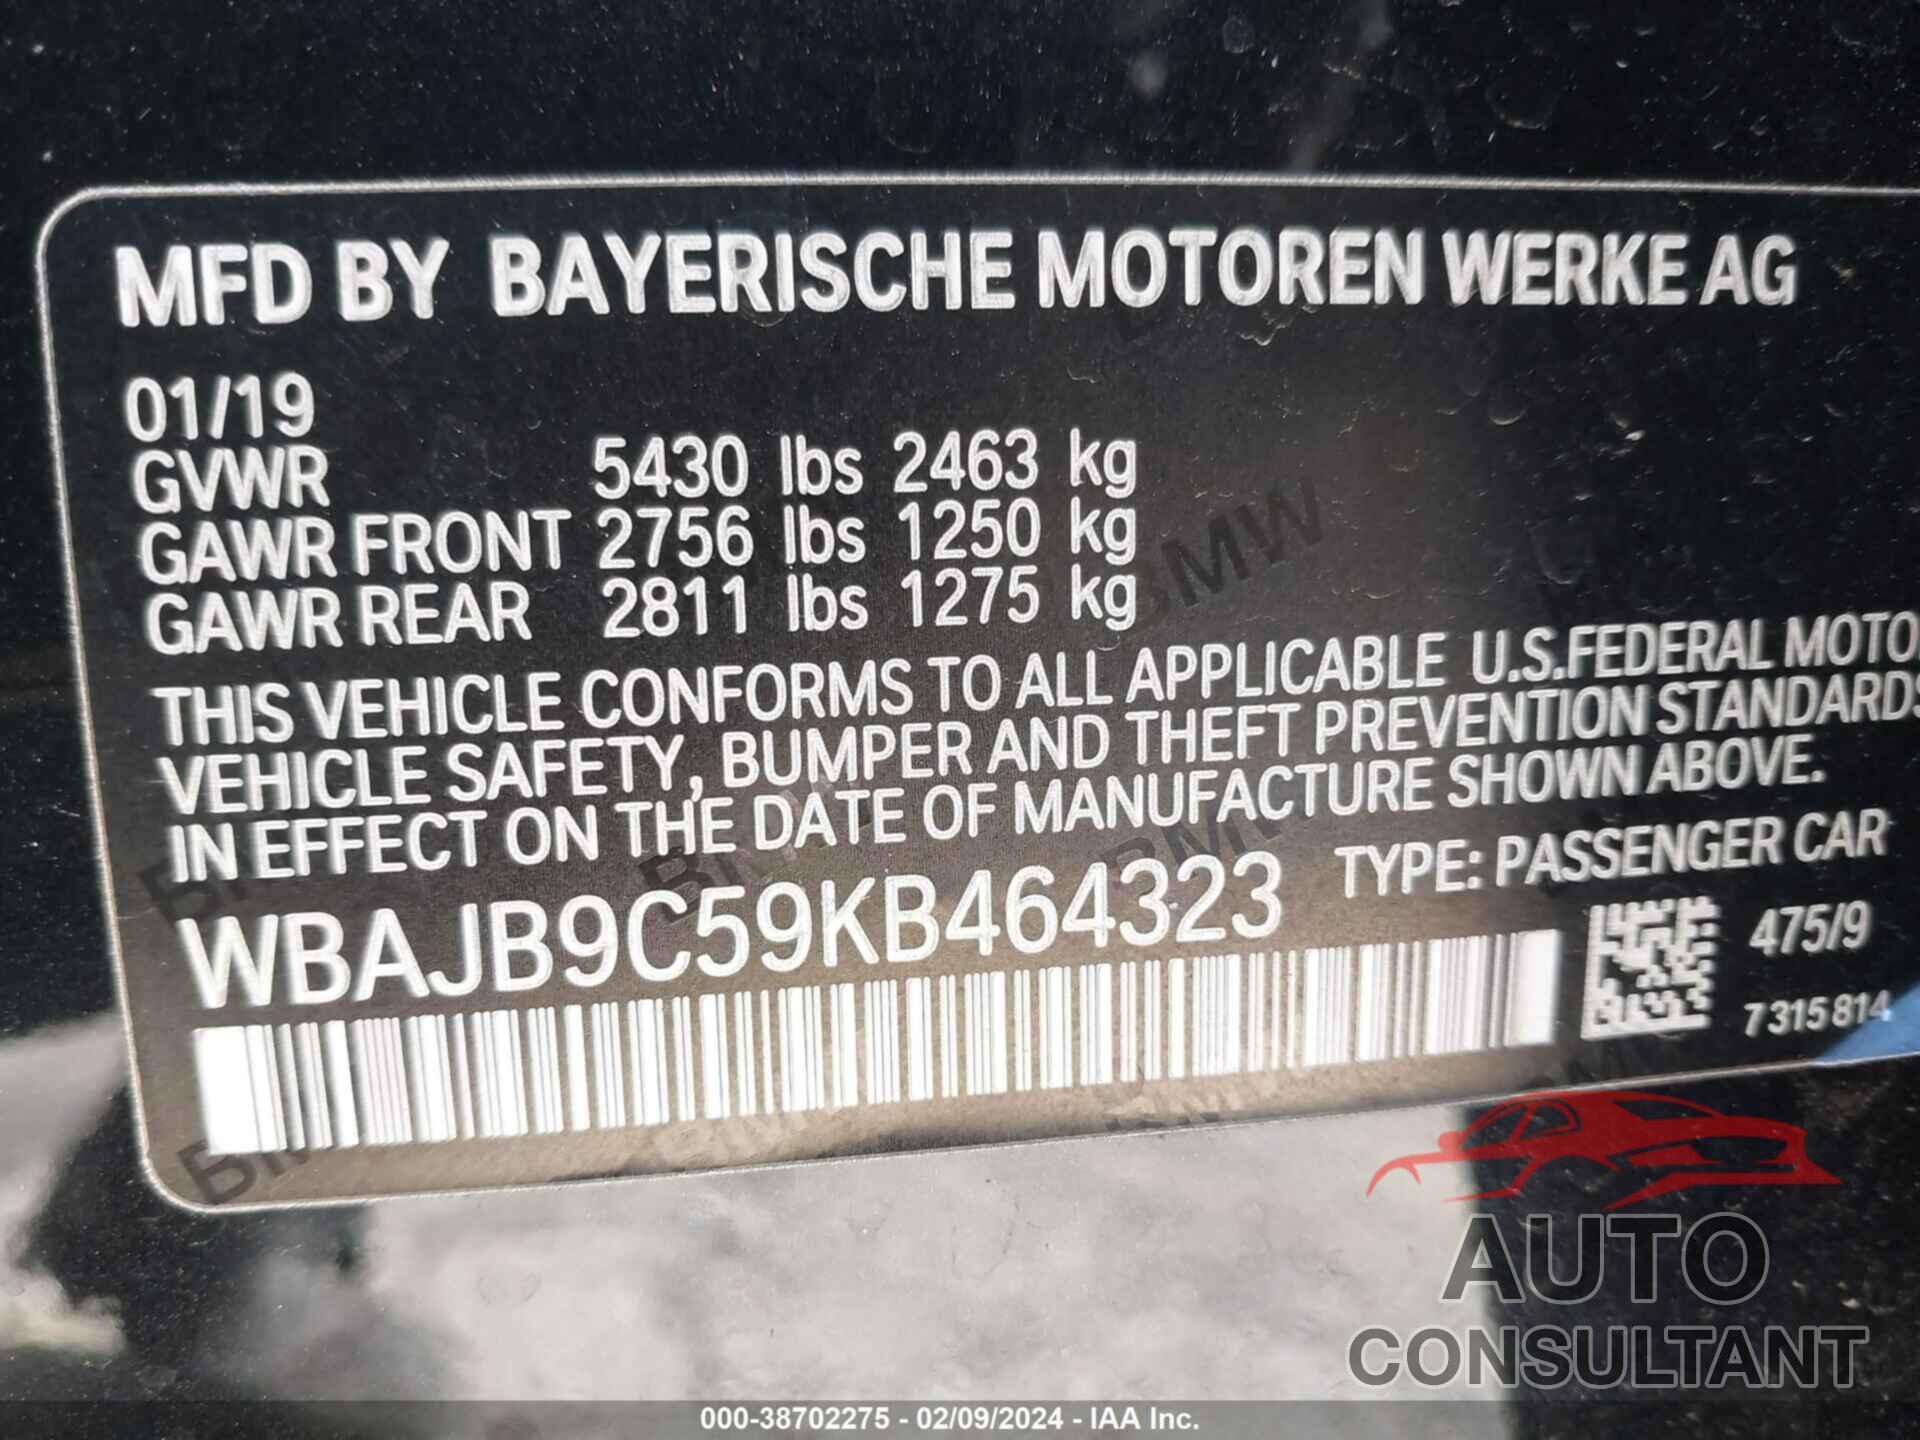 BMW M550I 2019 - WBAJB9C59KB464323